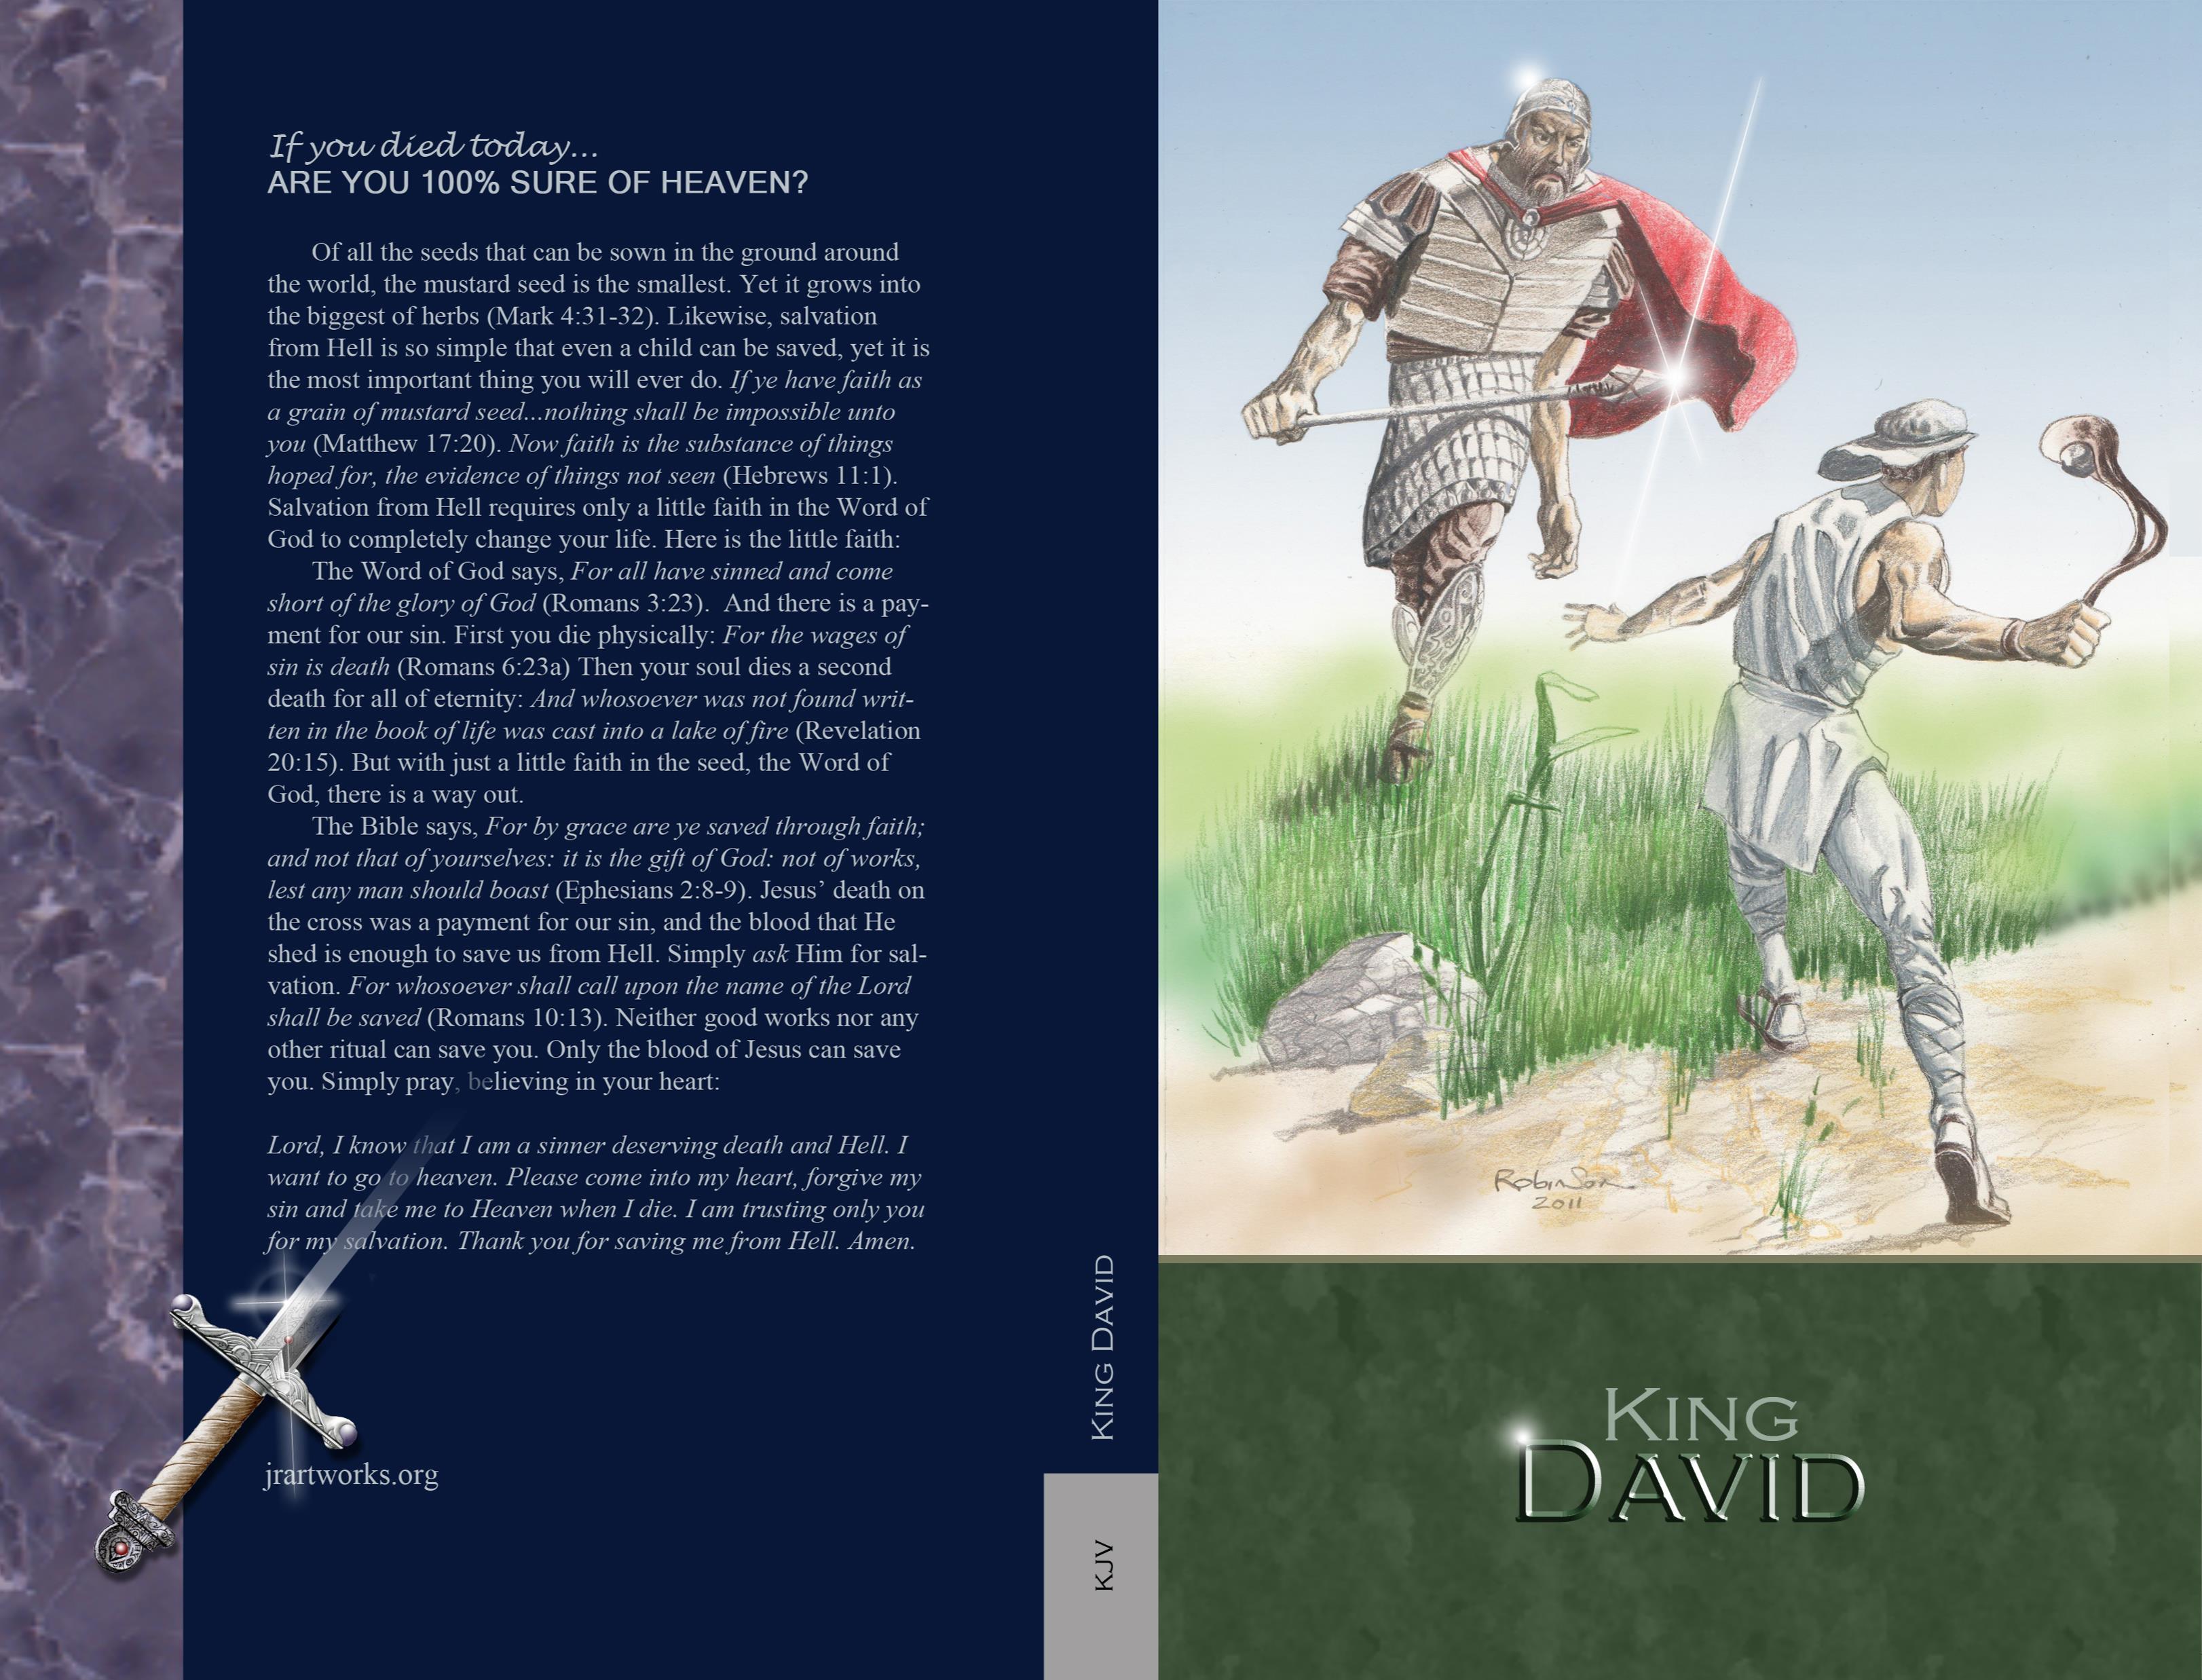 King David - KJV cover image